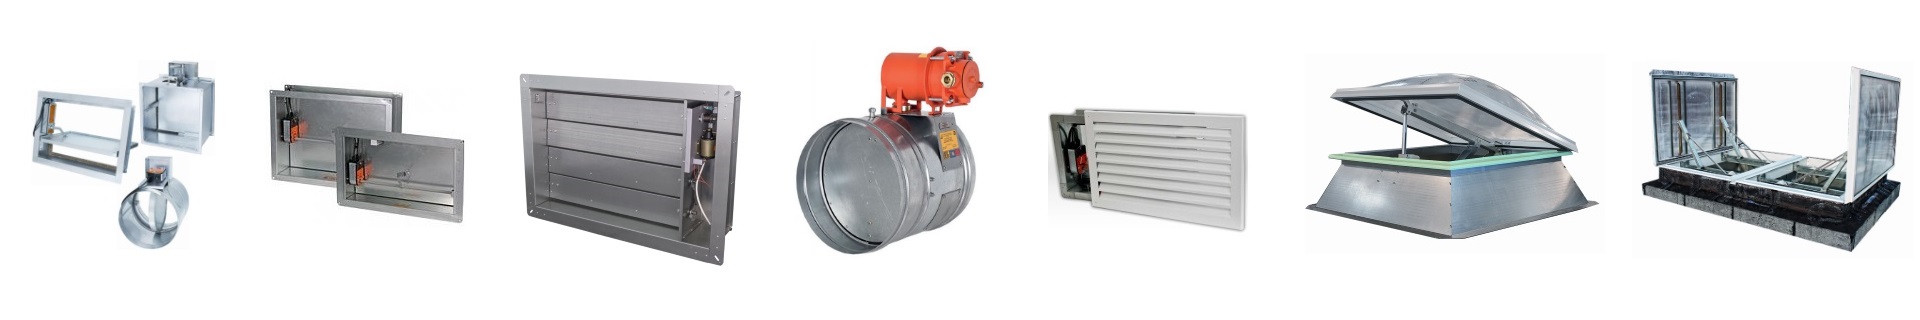 Клапаны противопожарные FKS от производителя купить клапан FKS для систем вентиляции